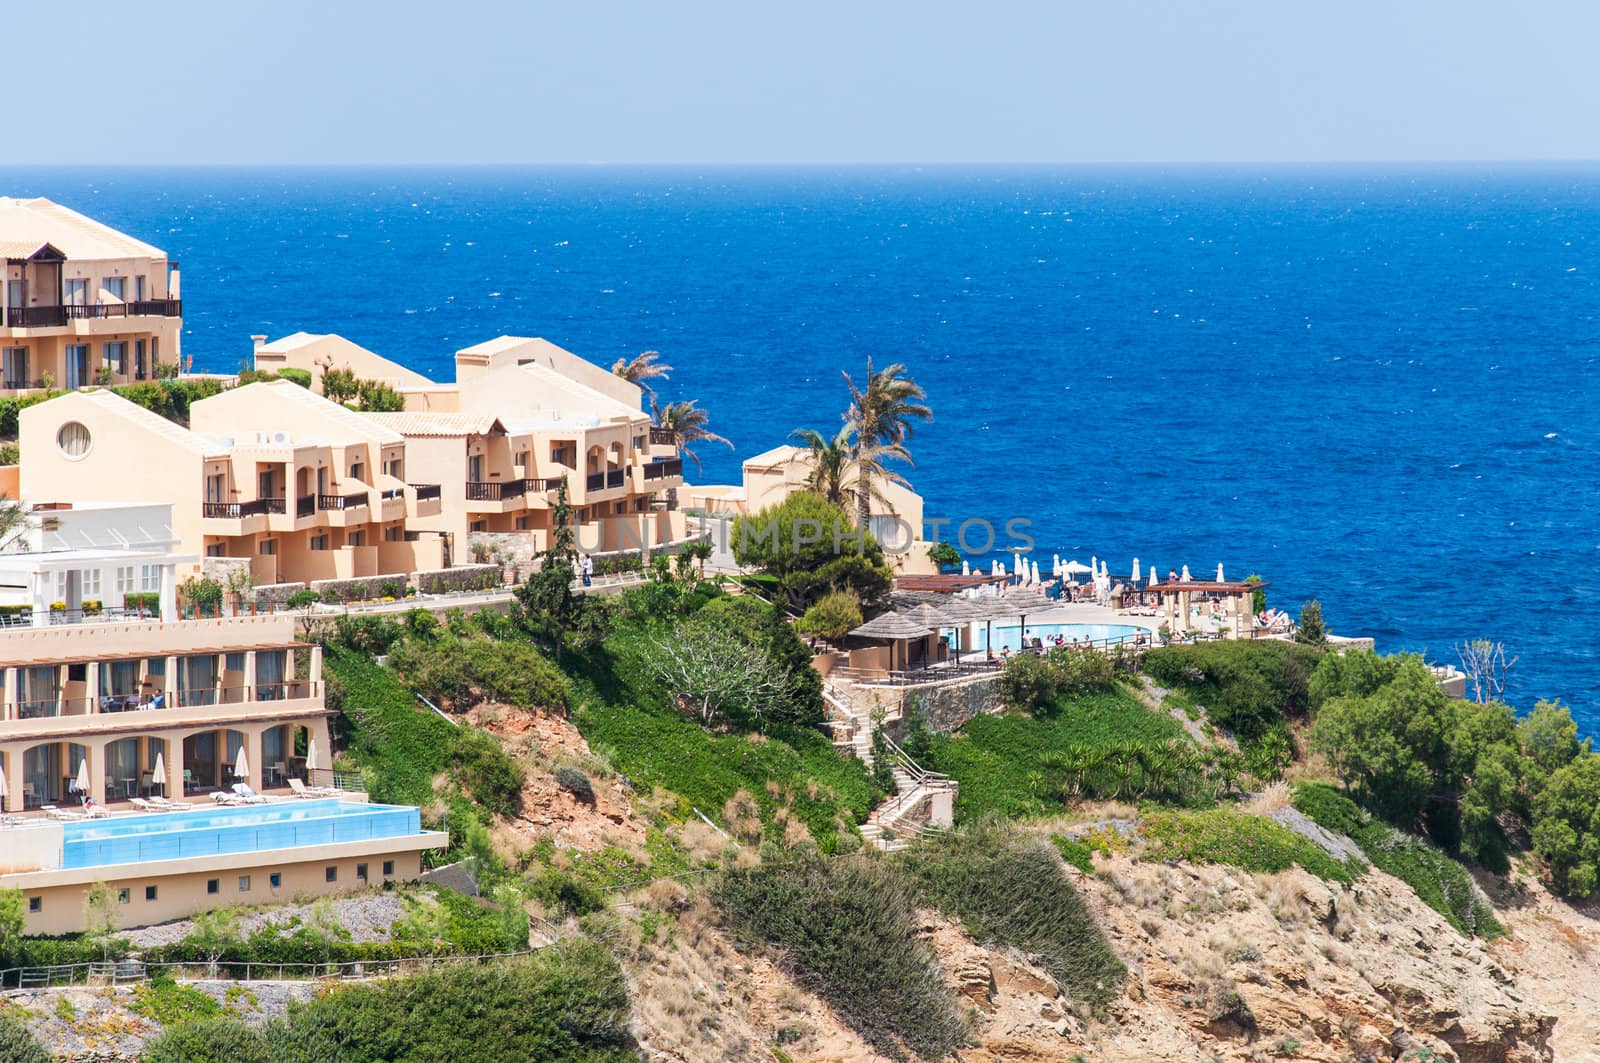 View on Mediterranean resort on Island Crete